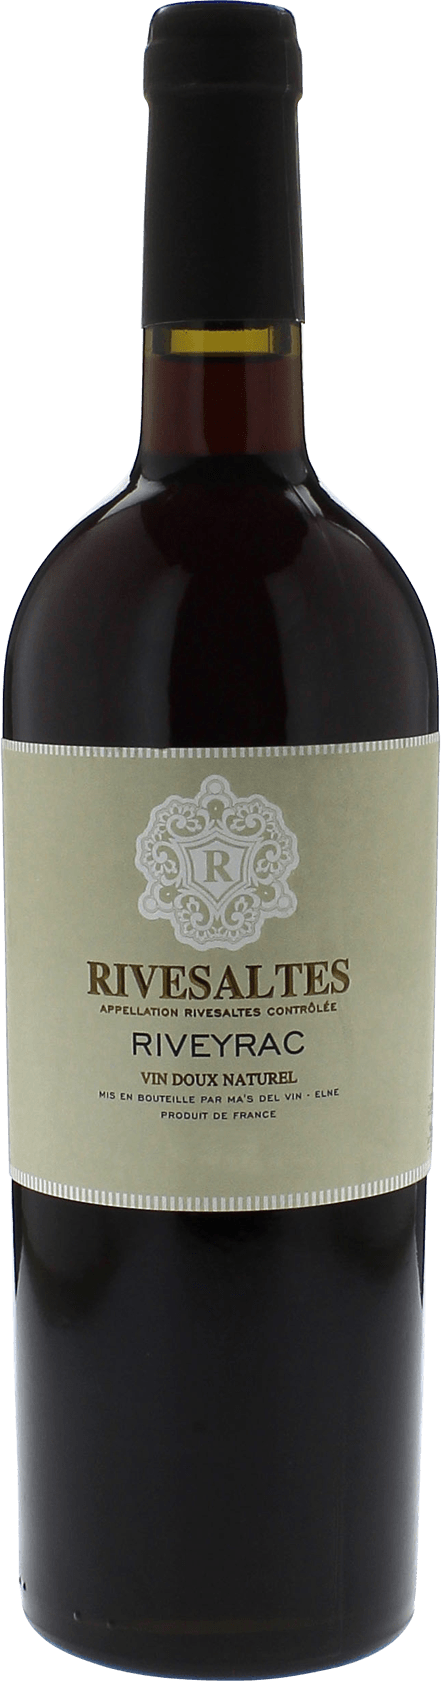 Rivesaltes riveyrac 1965 Vin doux naturel Rivesaltes, Vin doux naturel